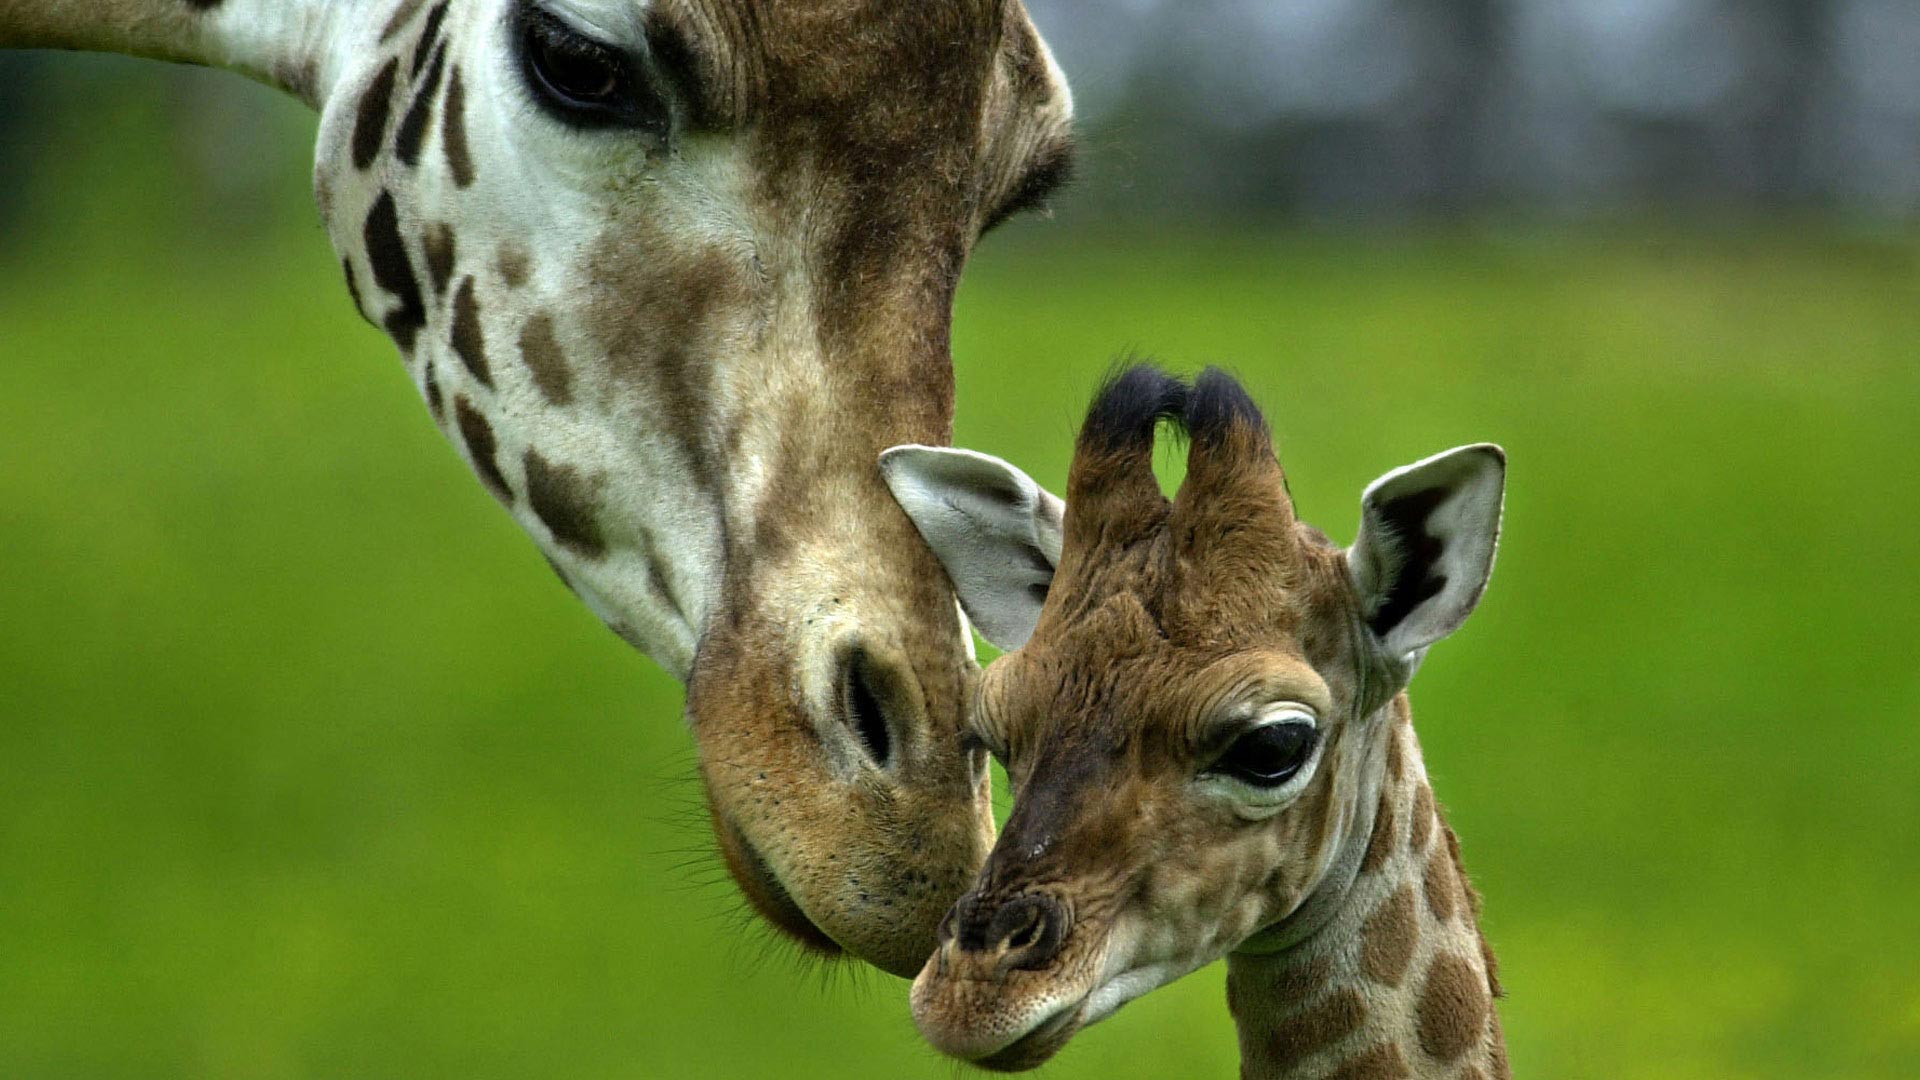 giraffe cute baby animals